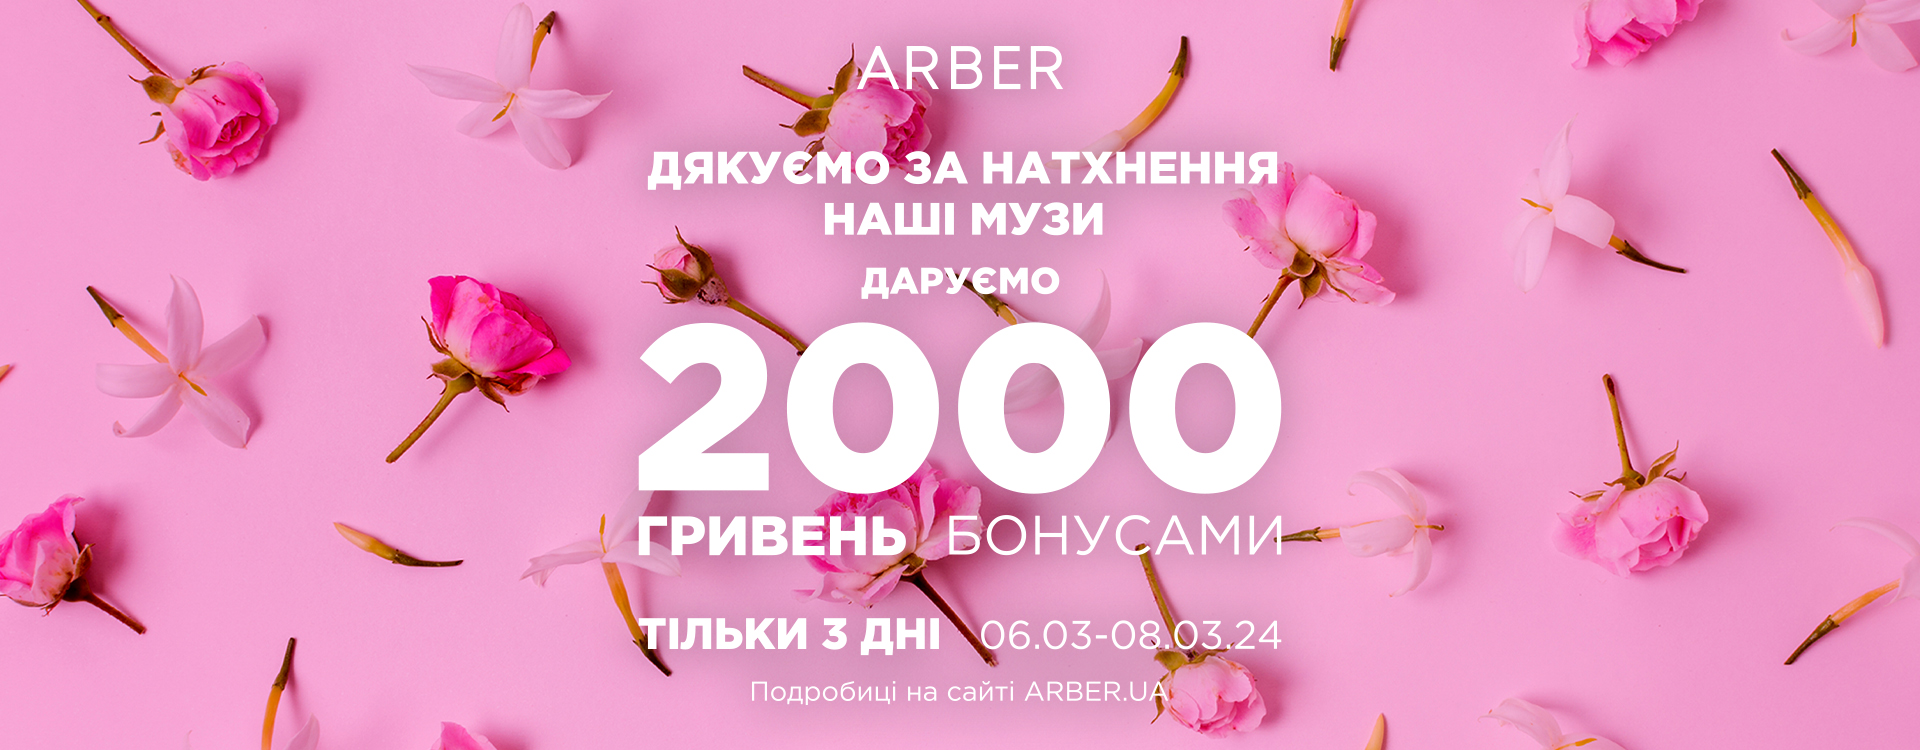 ARBER gives UAH 2,000 in bonuses